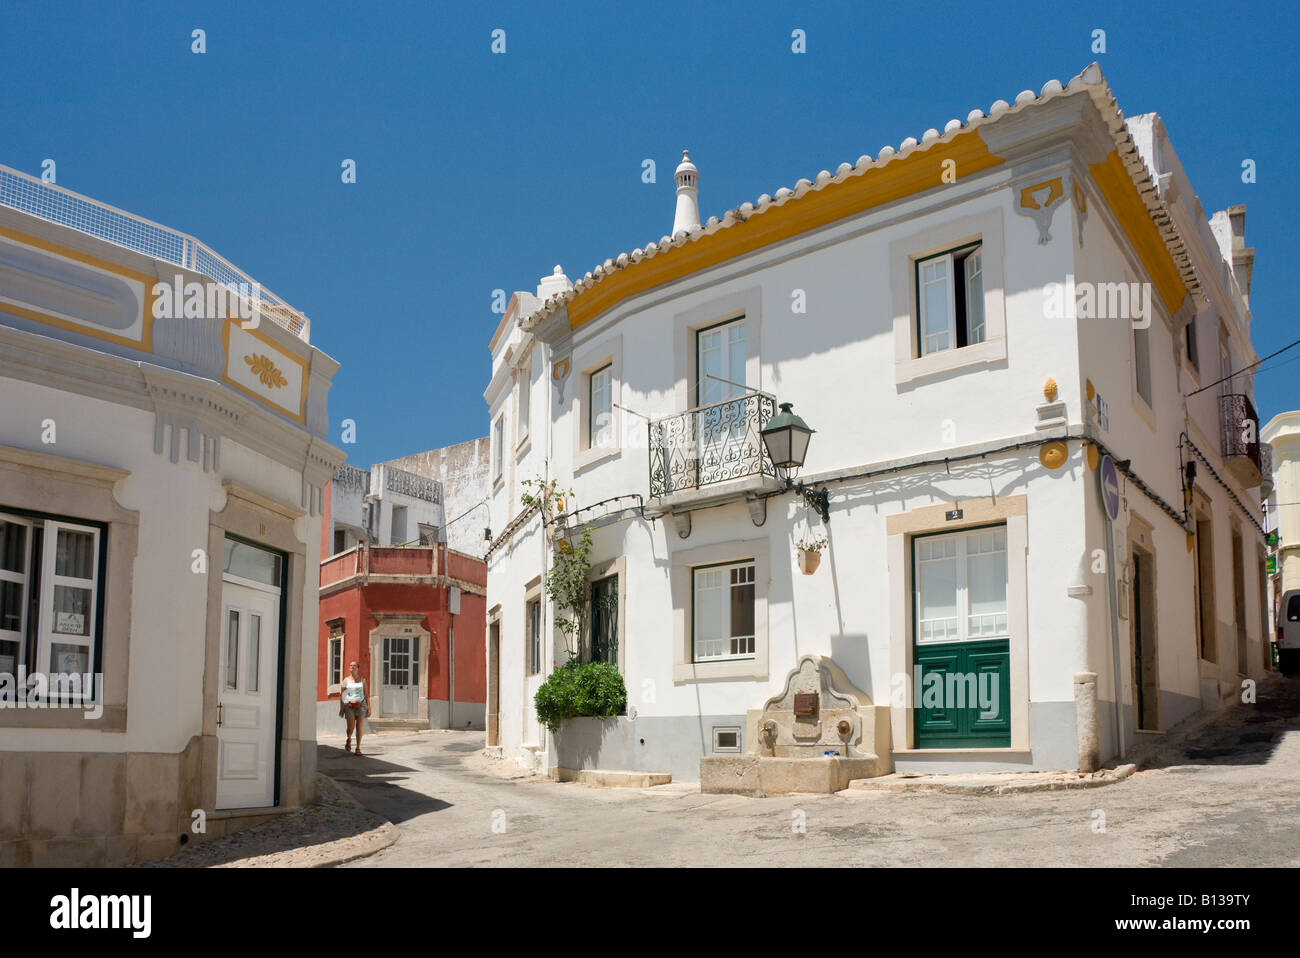 Portugal the Algarve Estói street scene near Faro Stock Photo